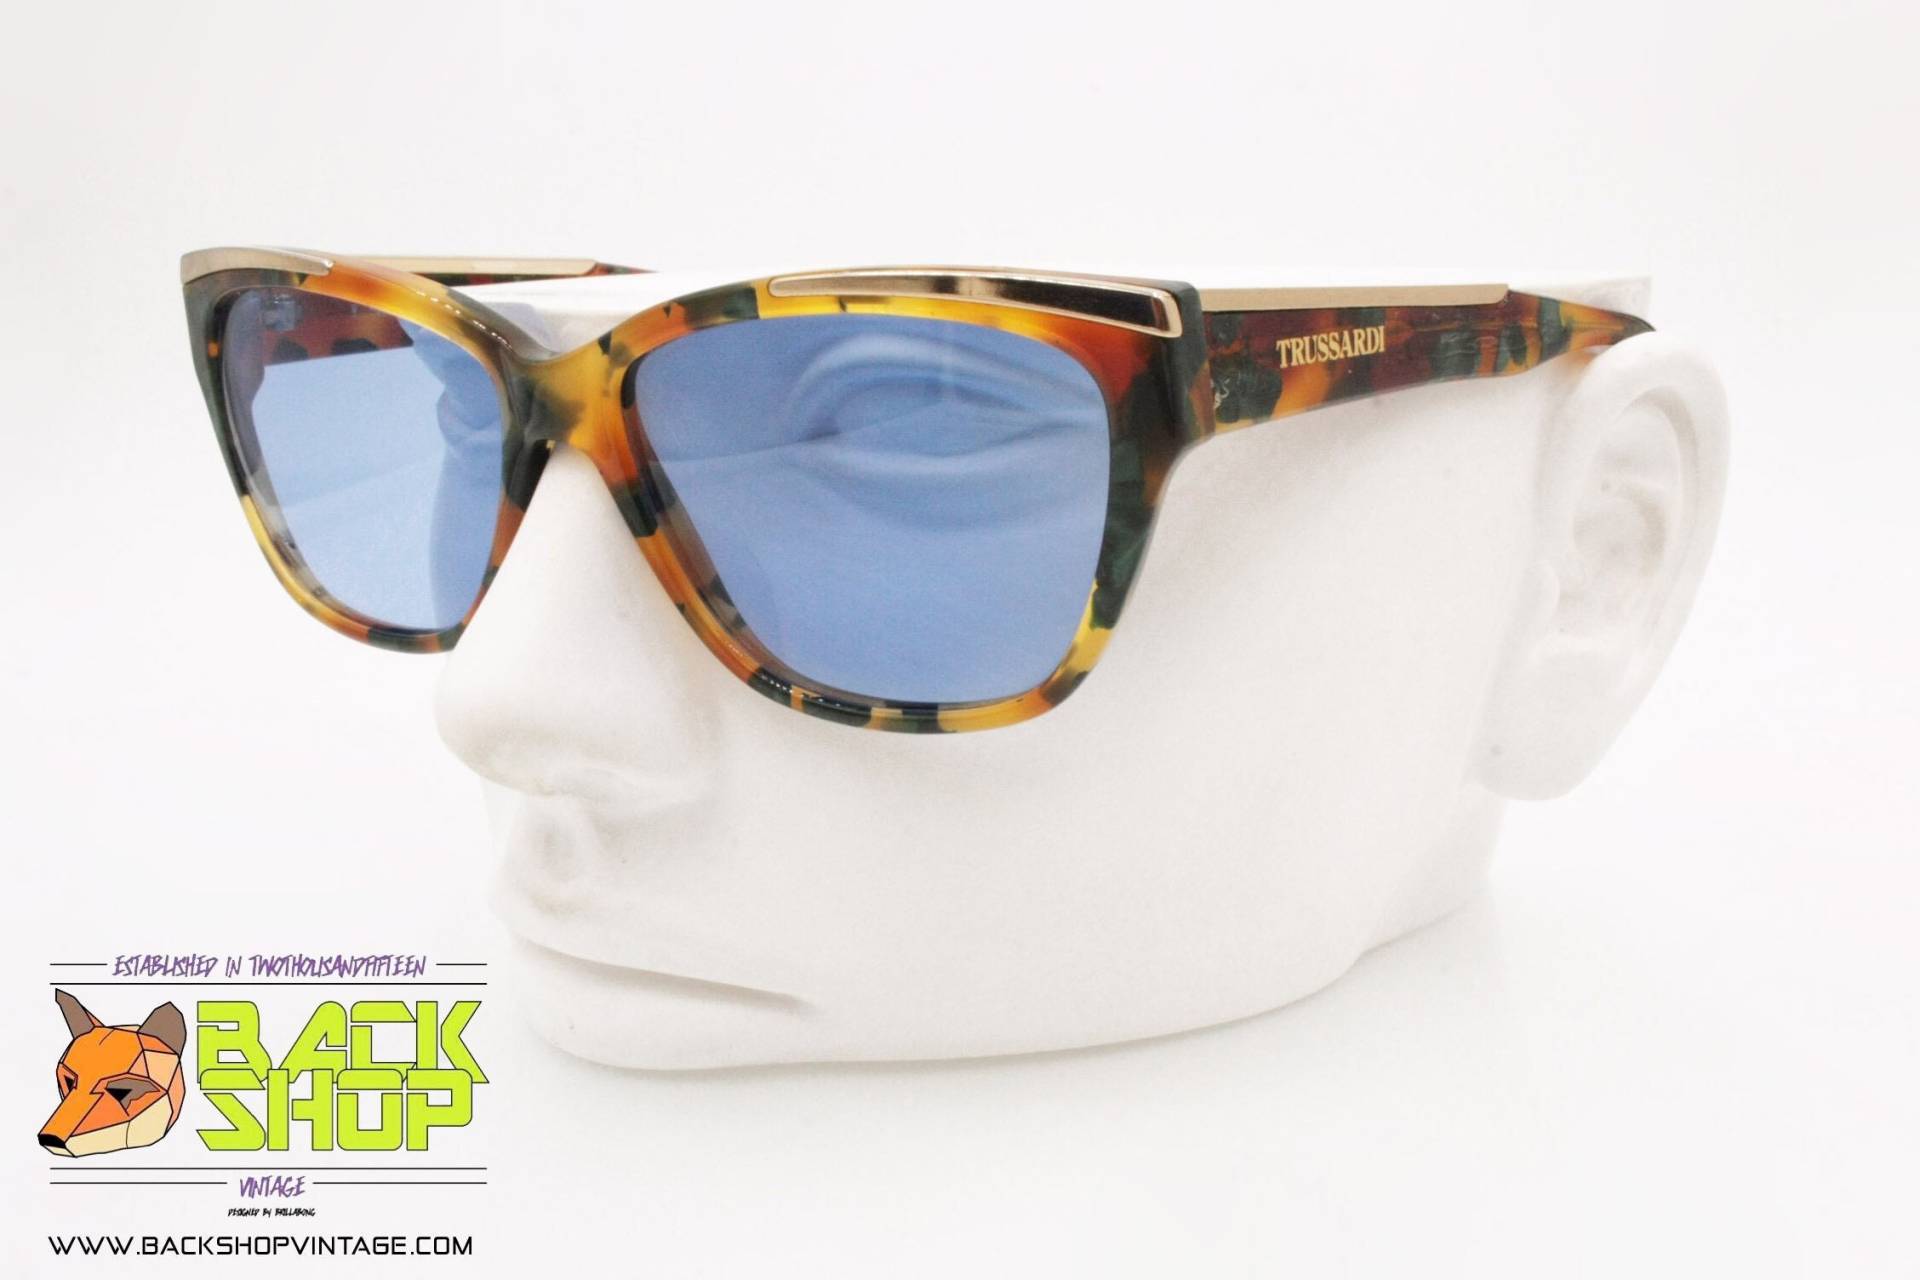 Trussardi Mod. Tpl 223 917, Vintage Sonnenbrille Frauen Blaue Linsen, Gebraucht von BackShopVintage